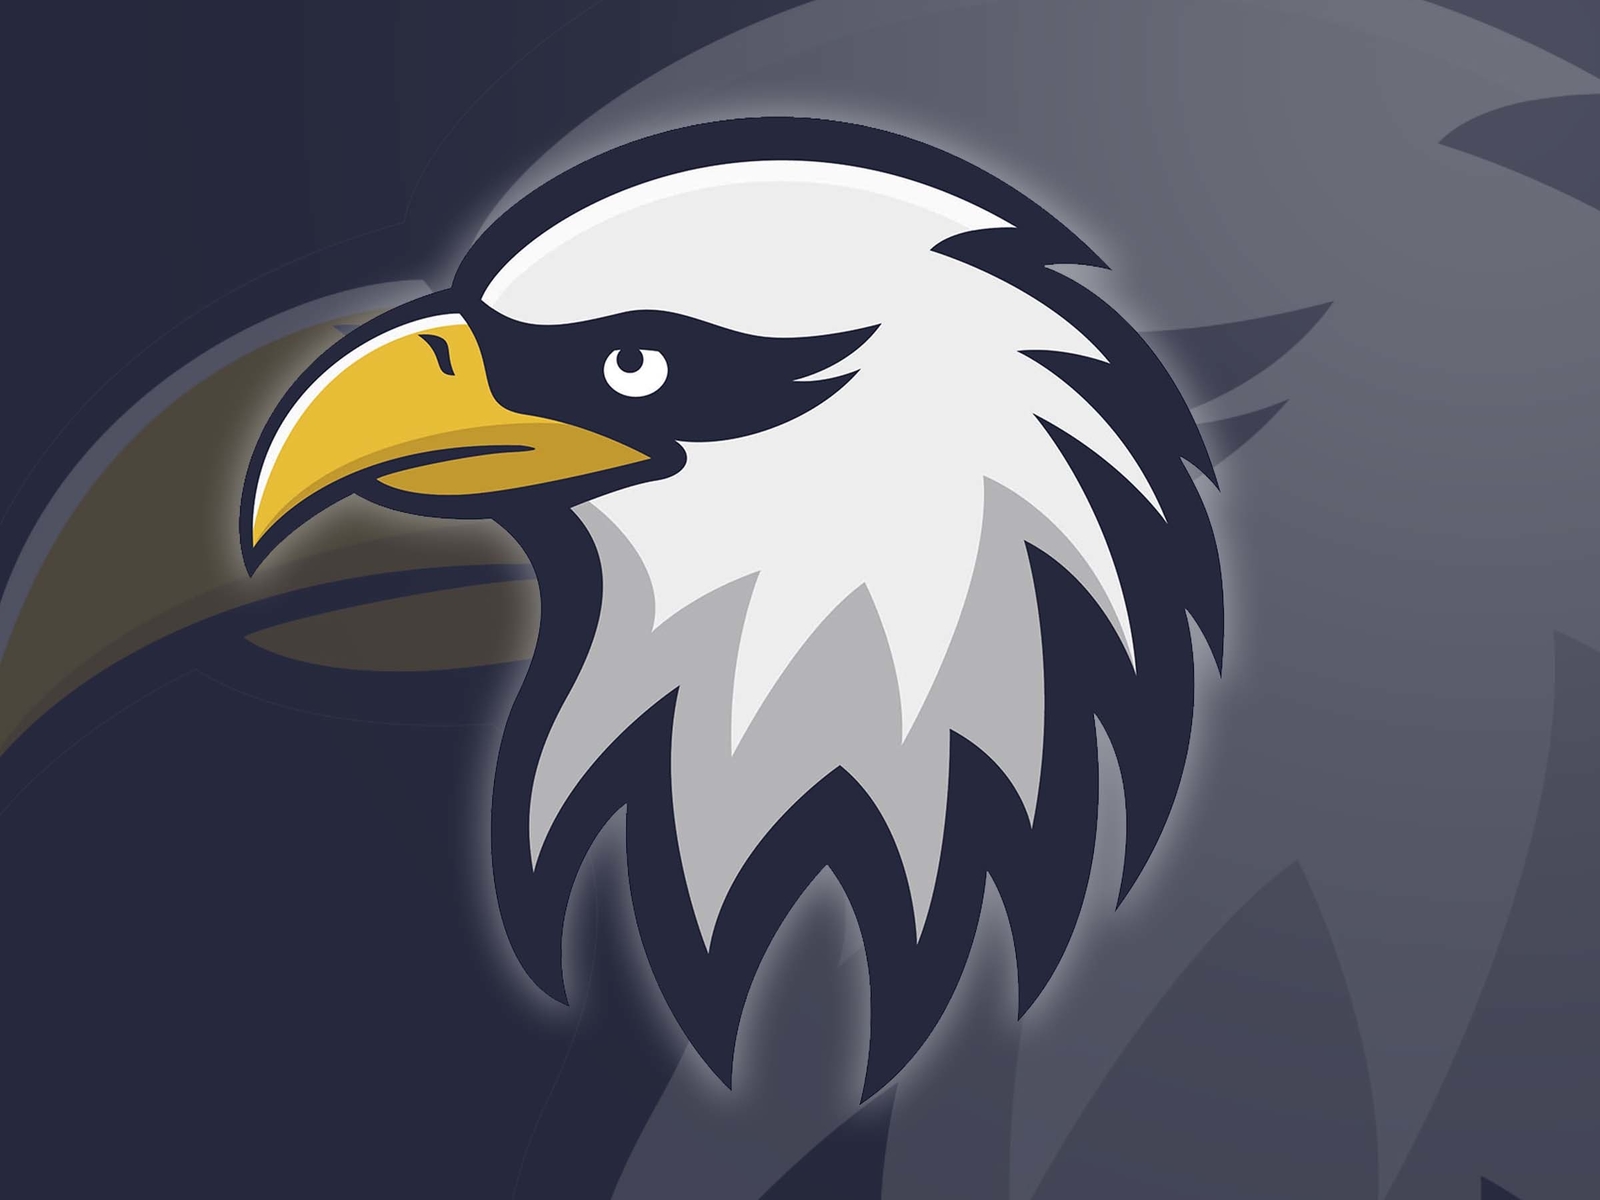 Рисунки 256 256. 256 На 256. Фото 256 на 256. Eagle logo 256x256. Лого Eagle на шапке.